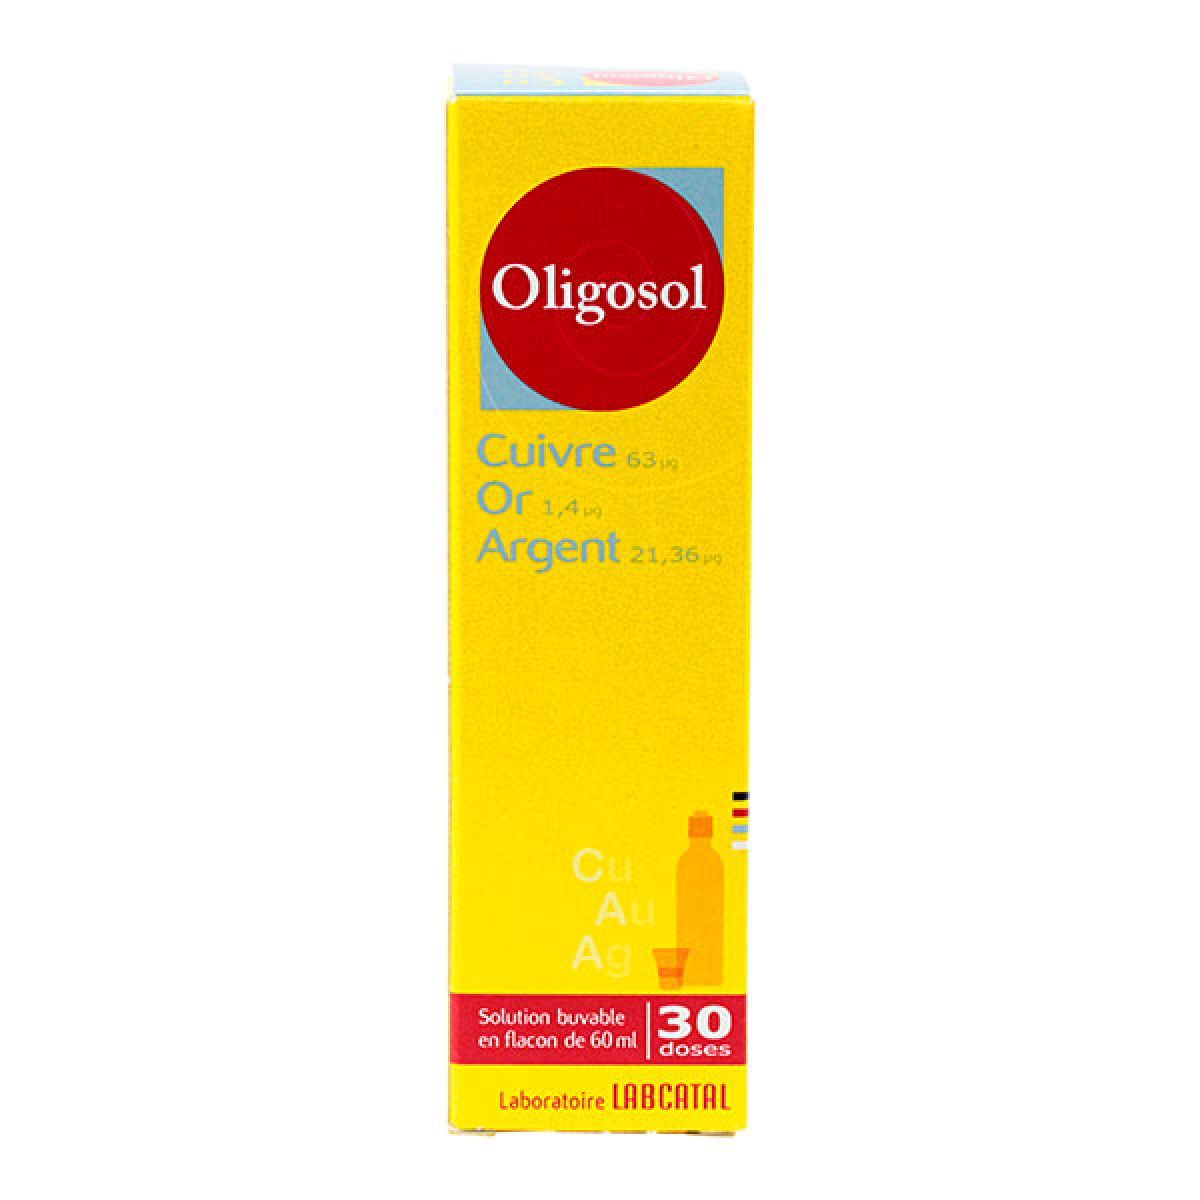 oligosol cuivre or argent est un médicament utilisé en cas d'asthénie